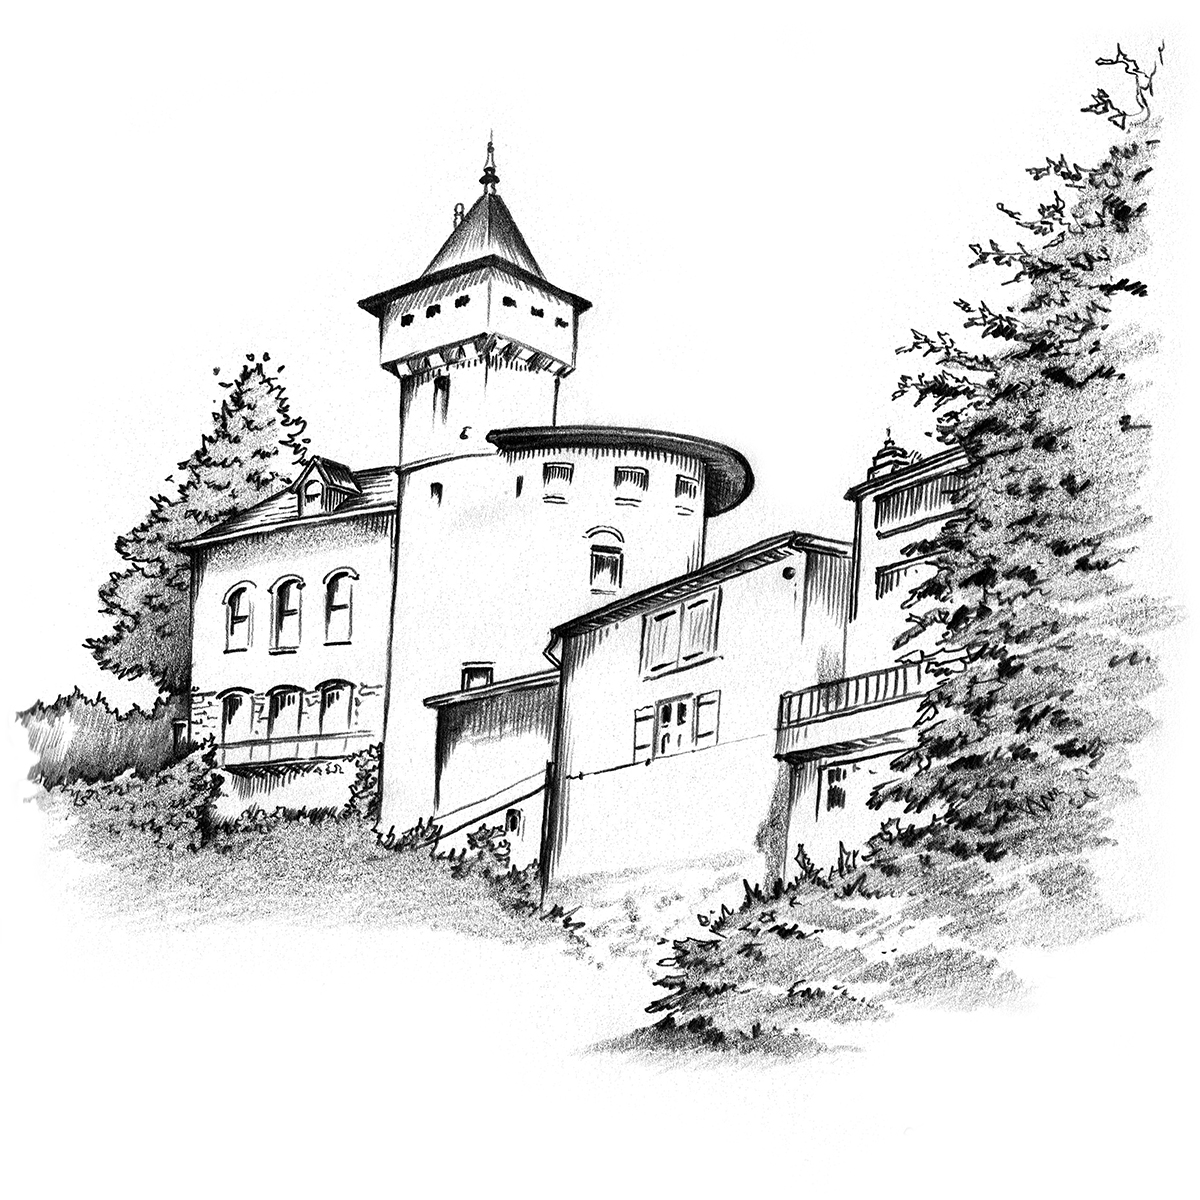 Château Corbin in Liverdun